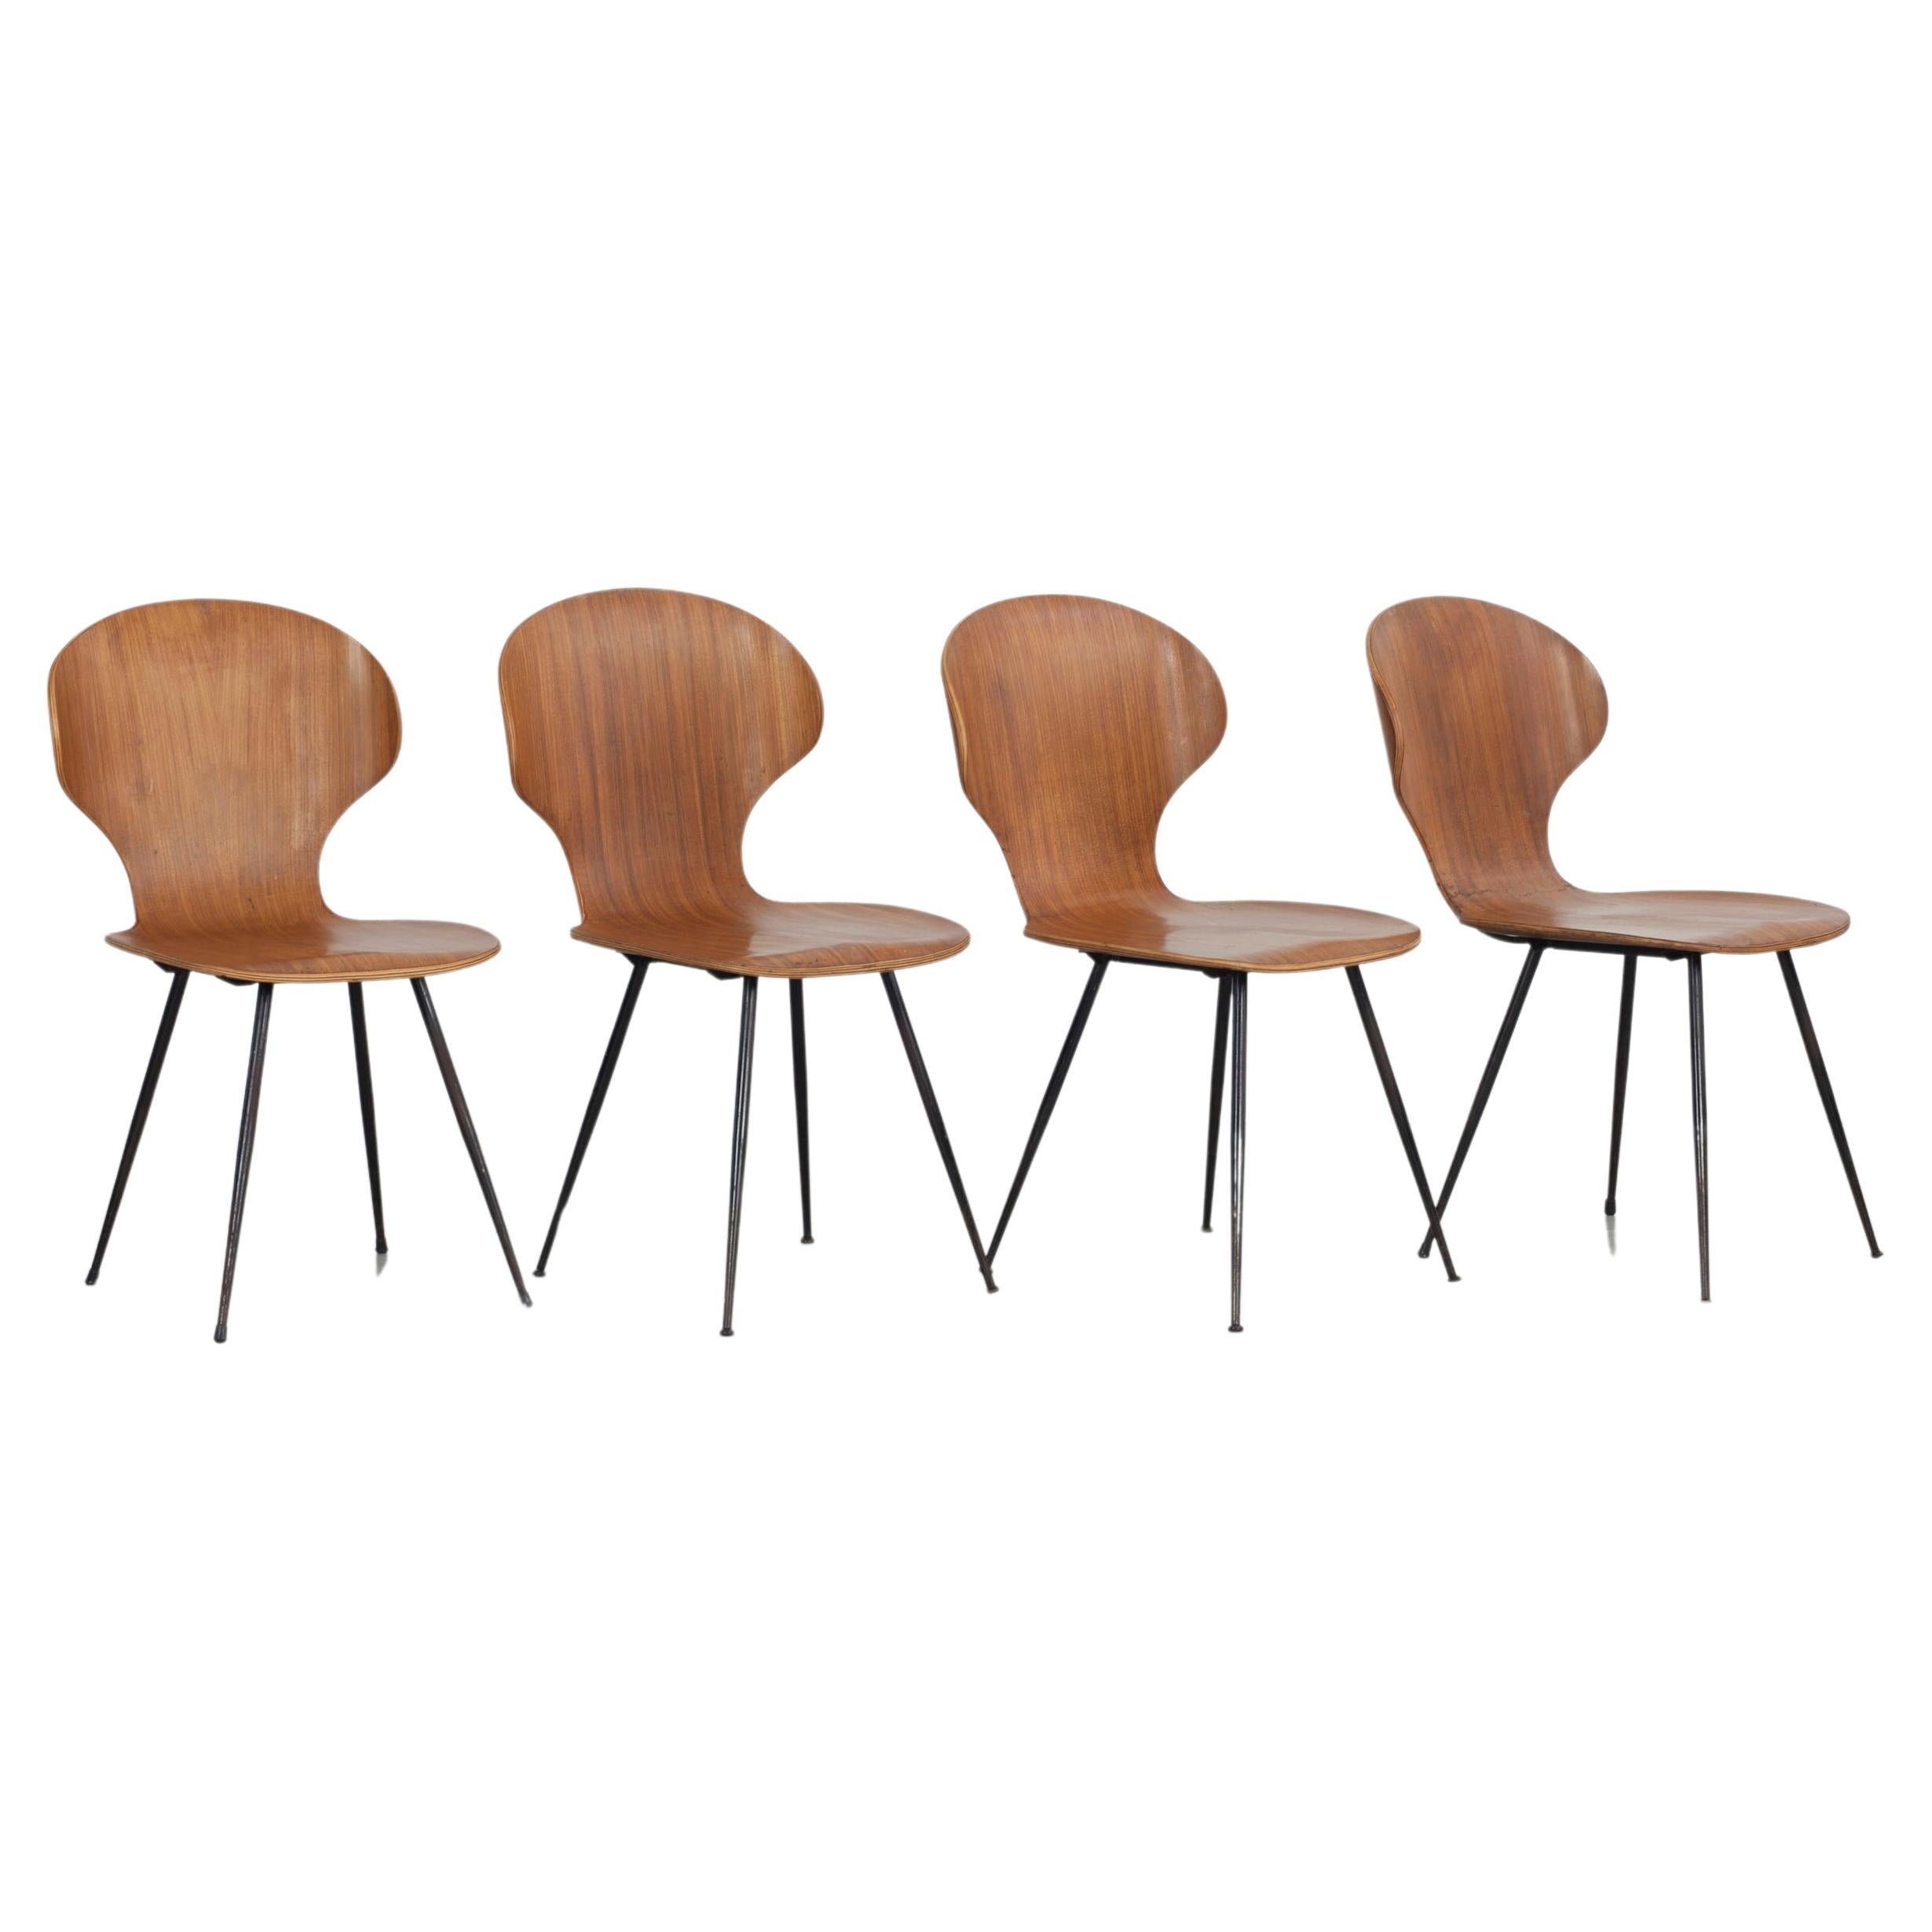 Ensemble de 4 chaises en bois cintré Carlo Ratti, Industria Legni Curvati, Italie  1950s.